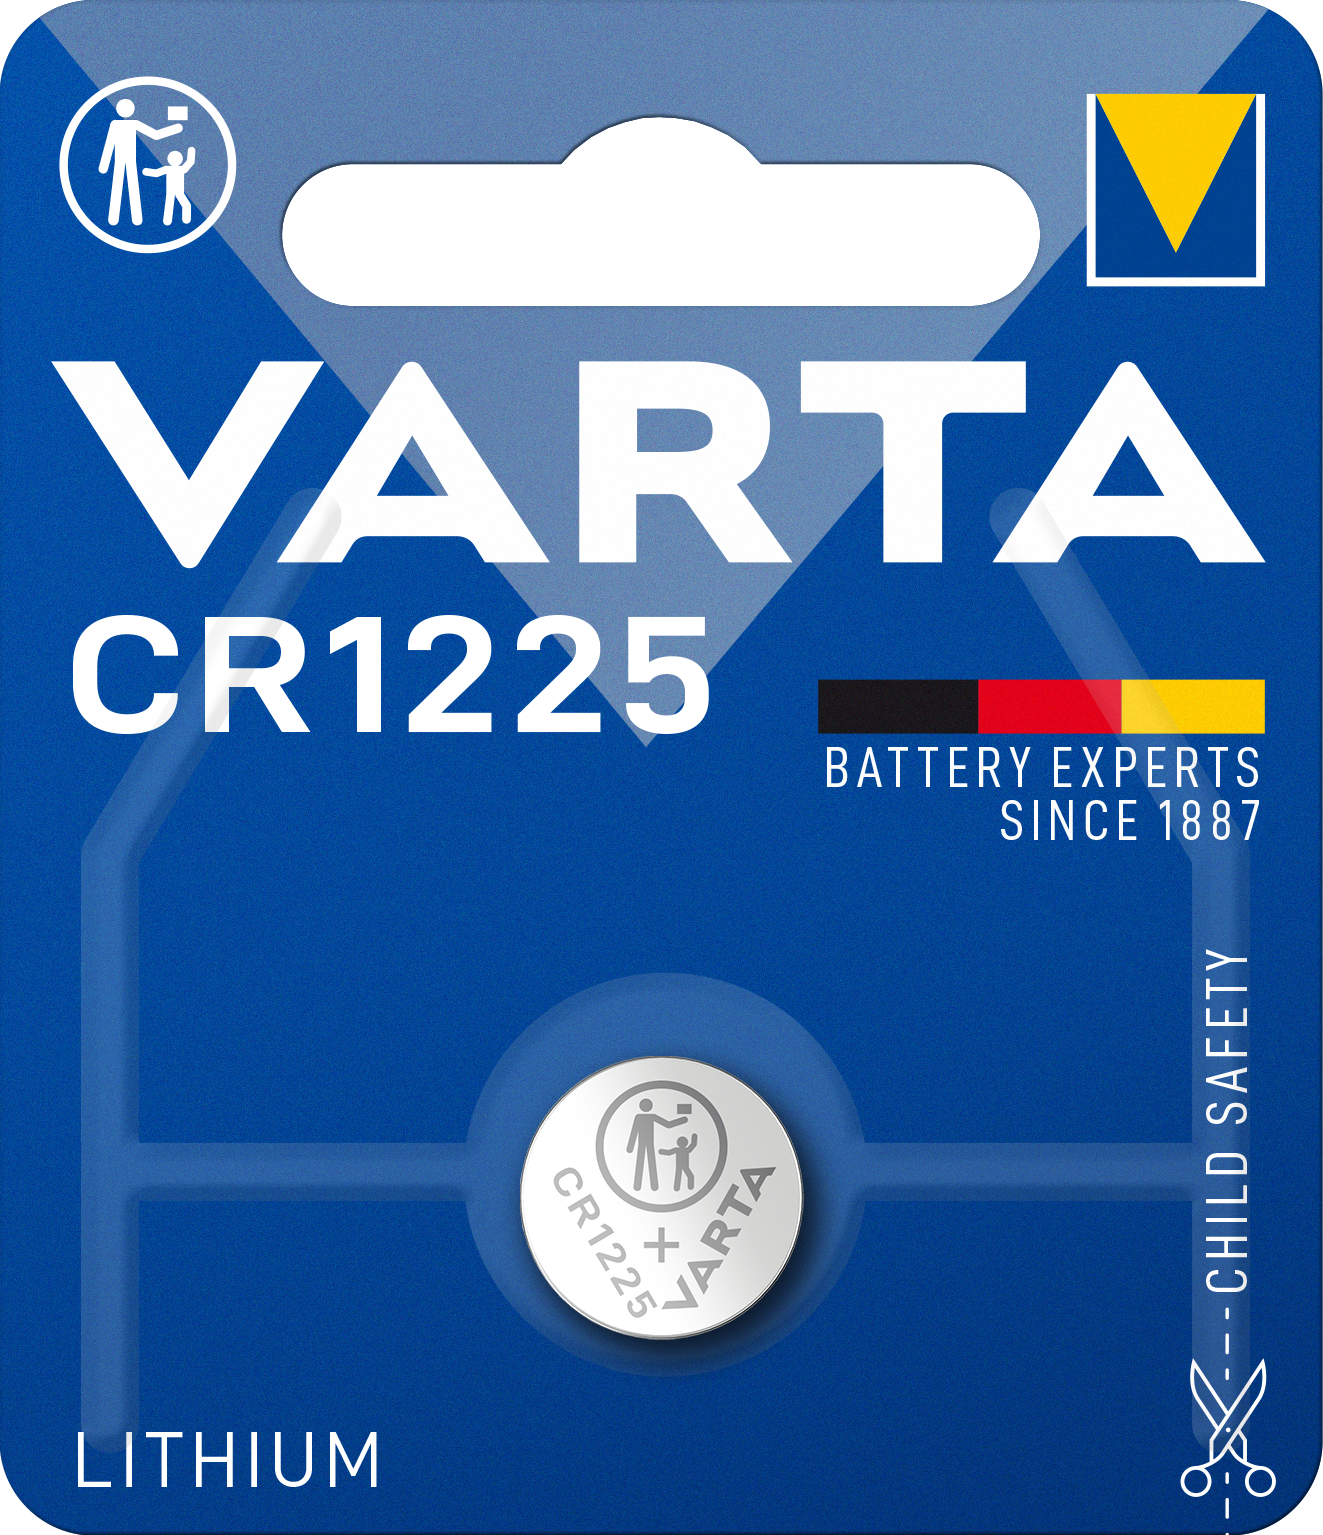 VARTA - Lithium - 1225